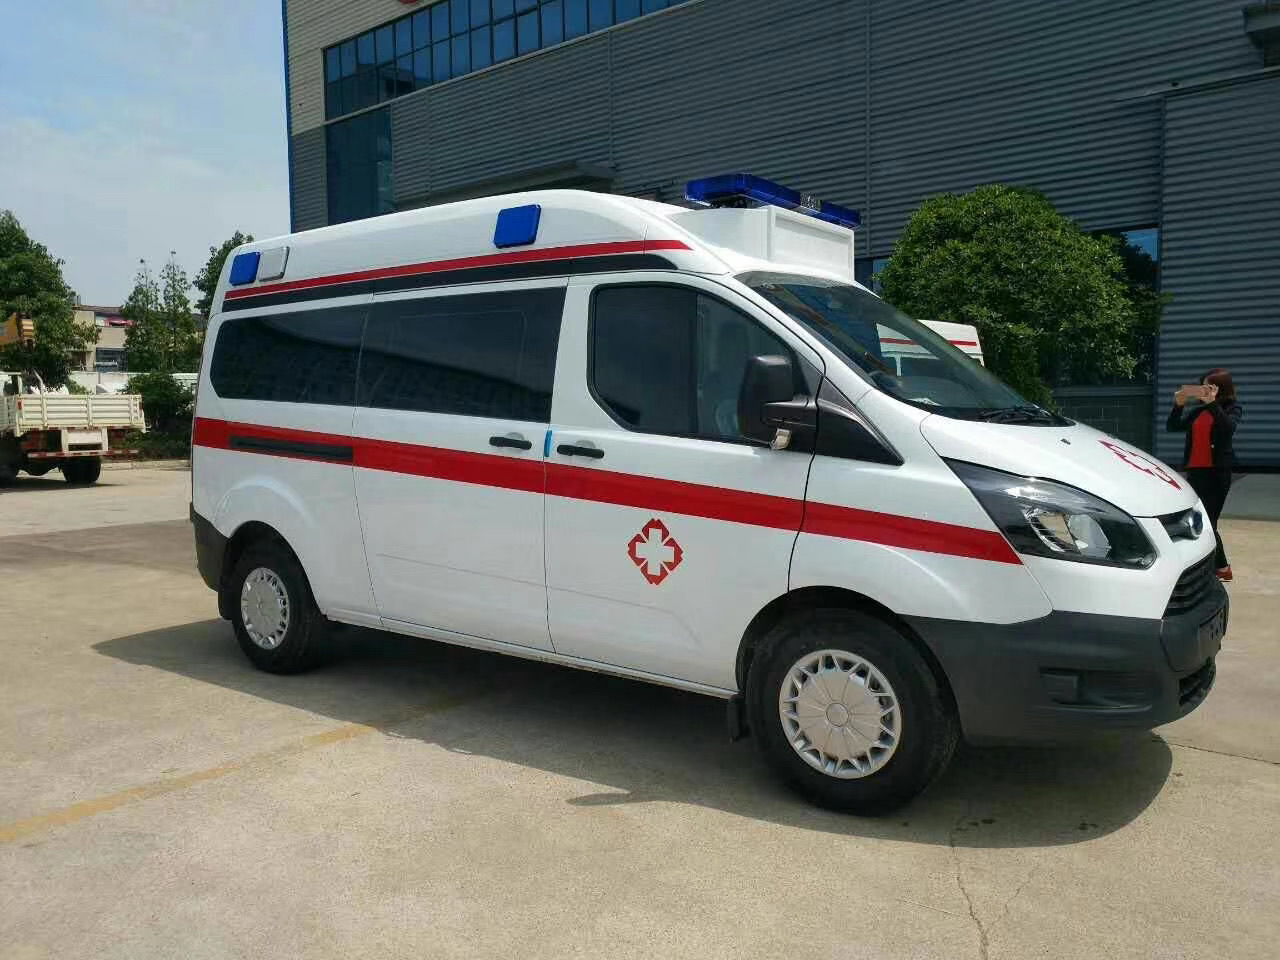 桦南县出院转院救护车